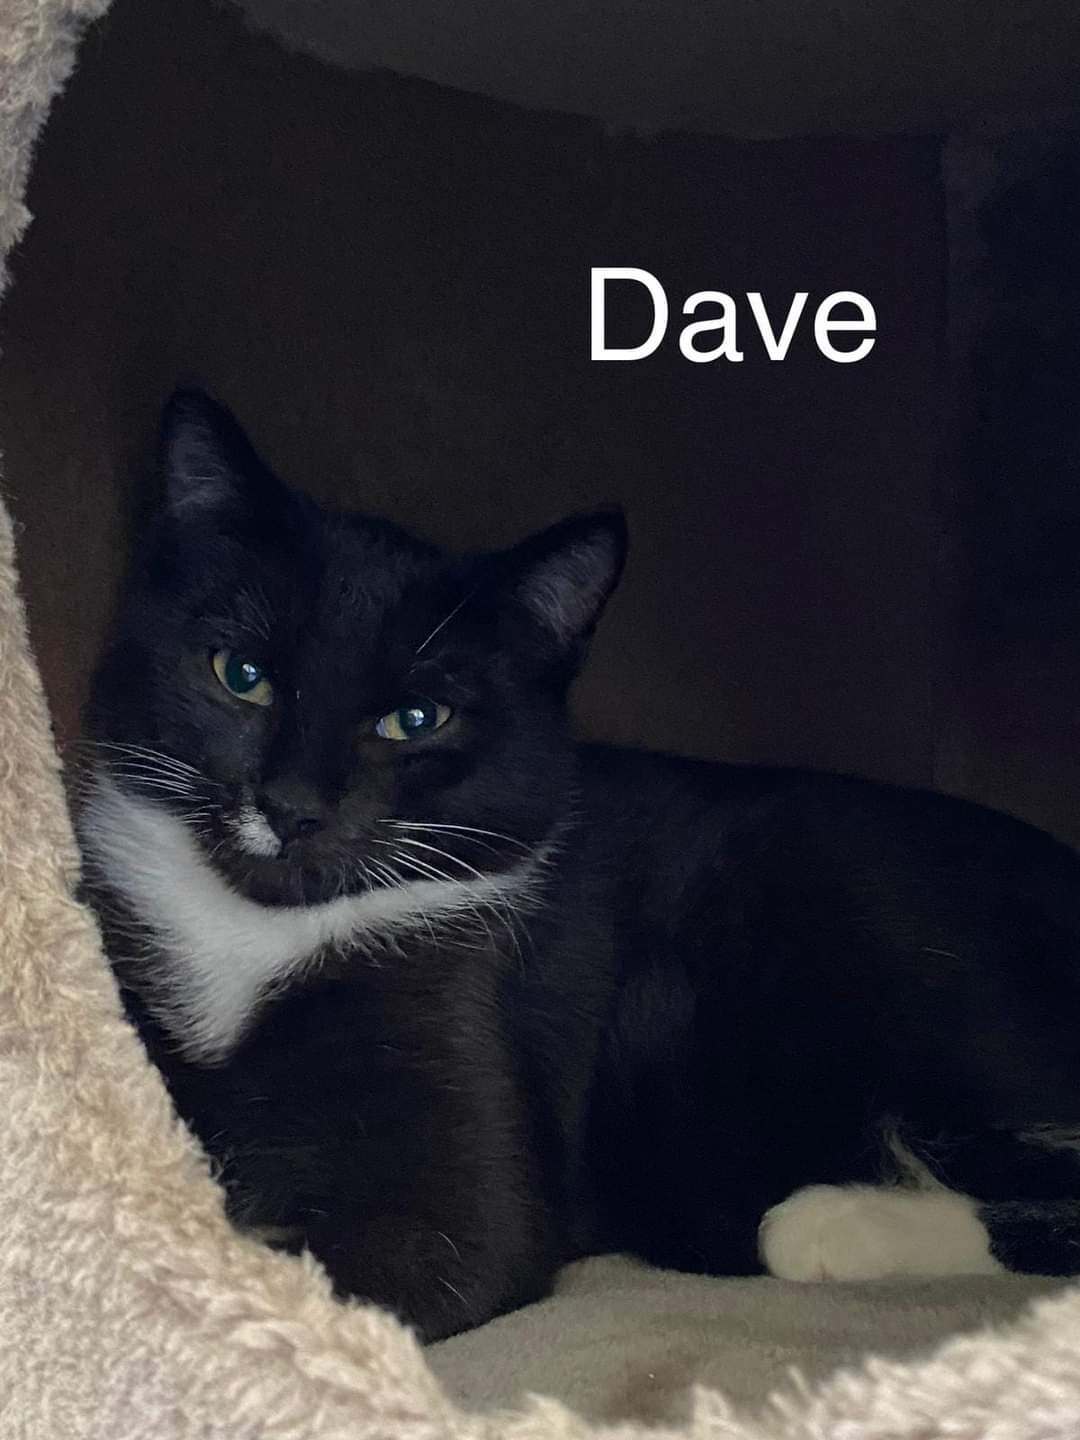 Dave möchte auch ein Zuhause 🐾❤